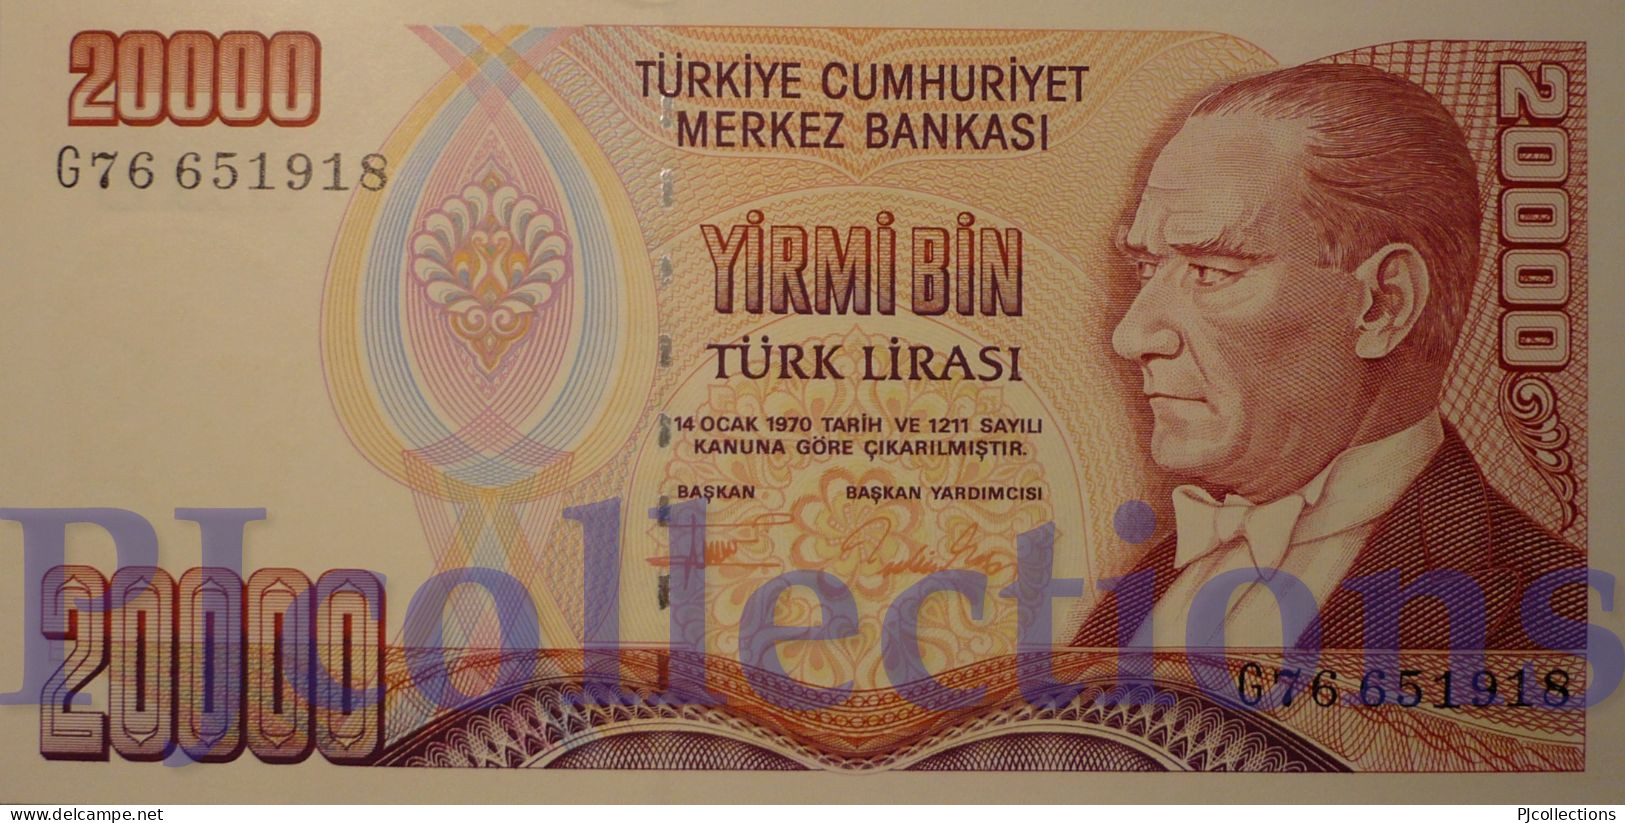 TURKEY 20000 LIRA 1995 PICK 202 UNC - Turkey